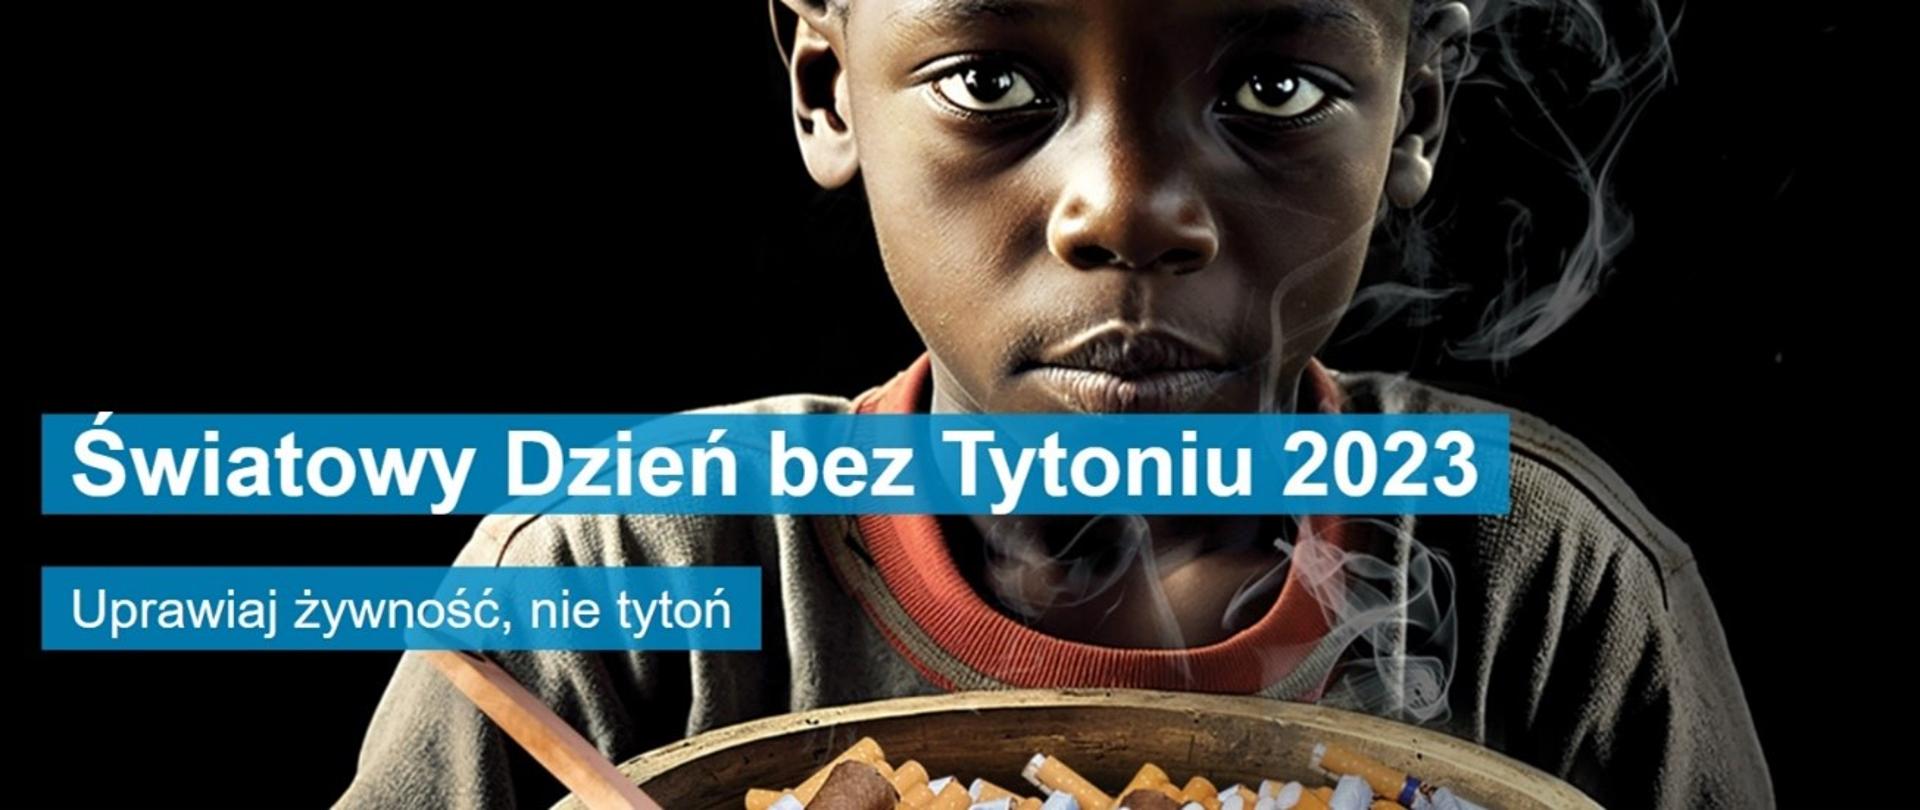 Światowy Dzień Bez Tytoniu 2023